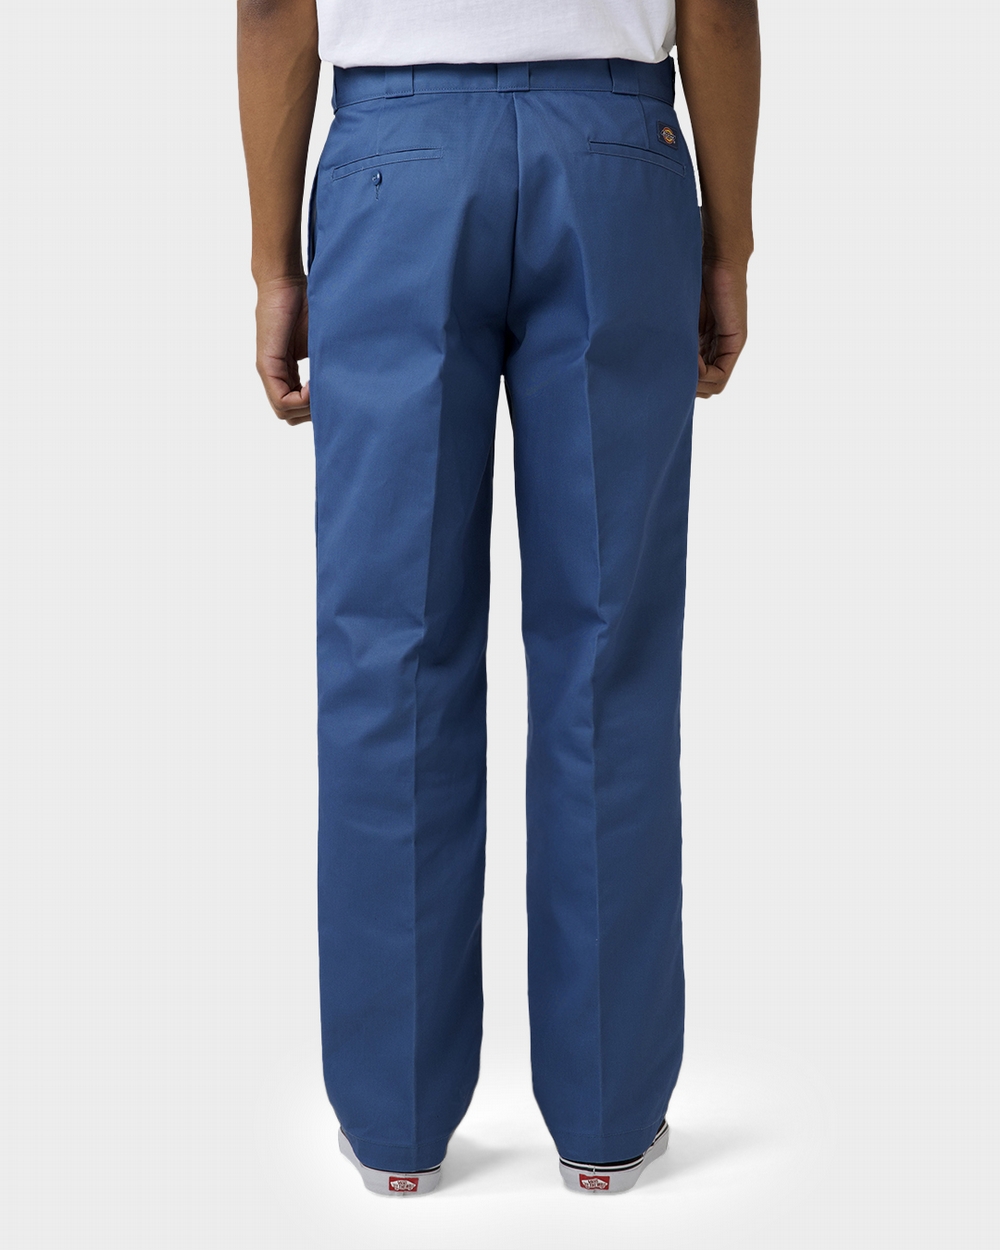 Original 874 Work Pants  Navy Blue Size 31 30  Mens Pants  Dickies